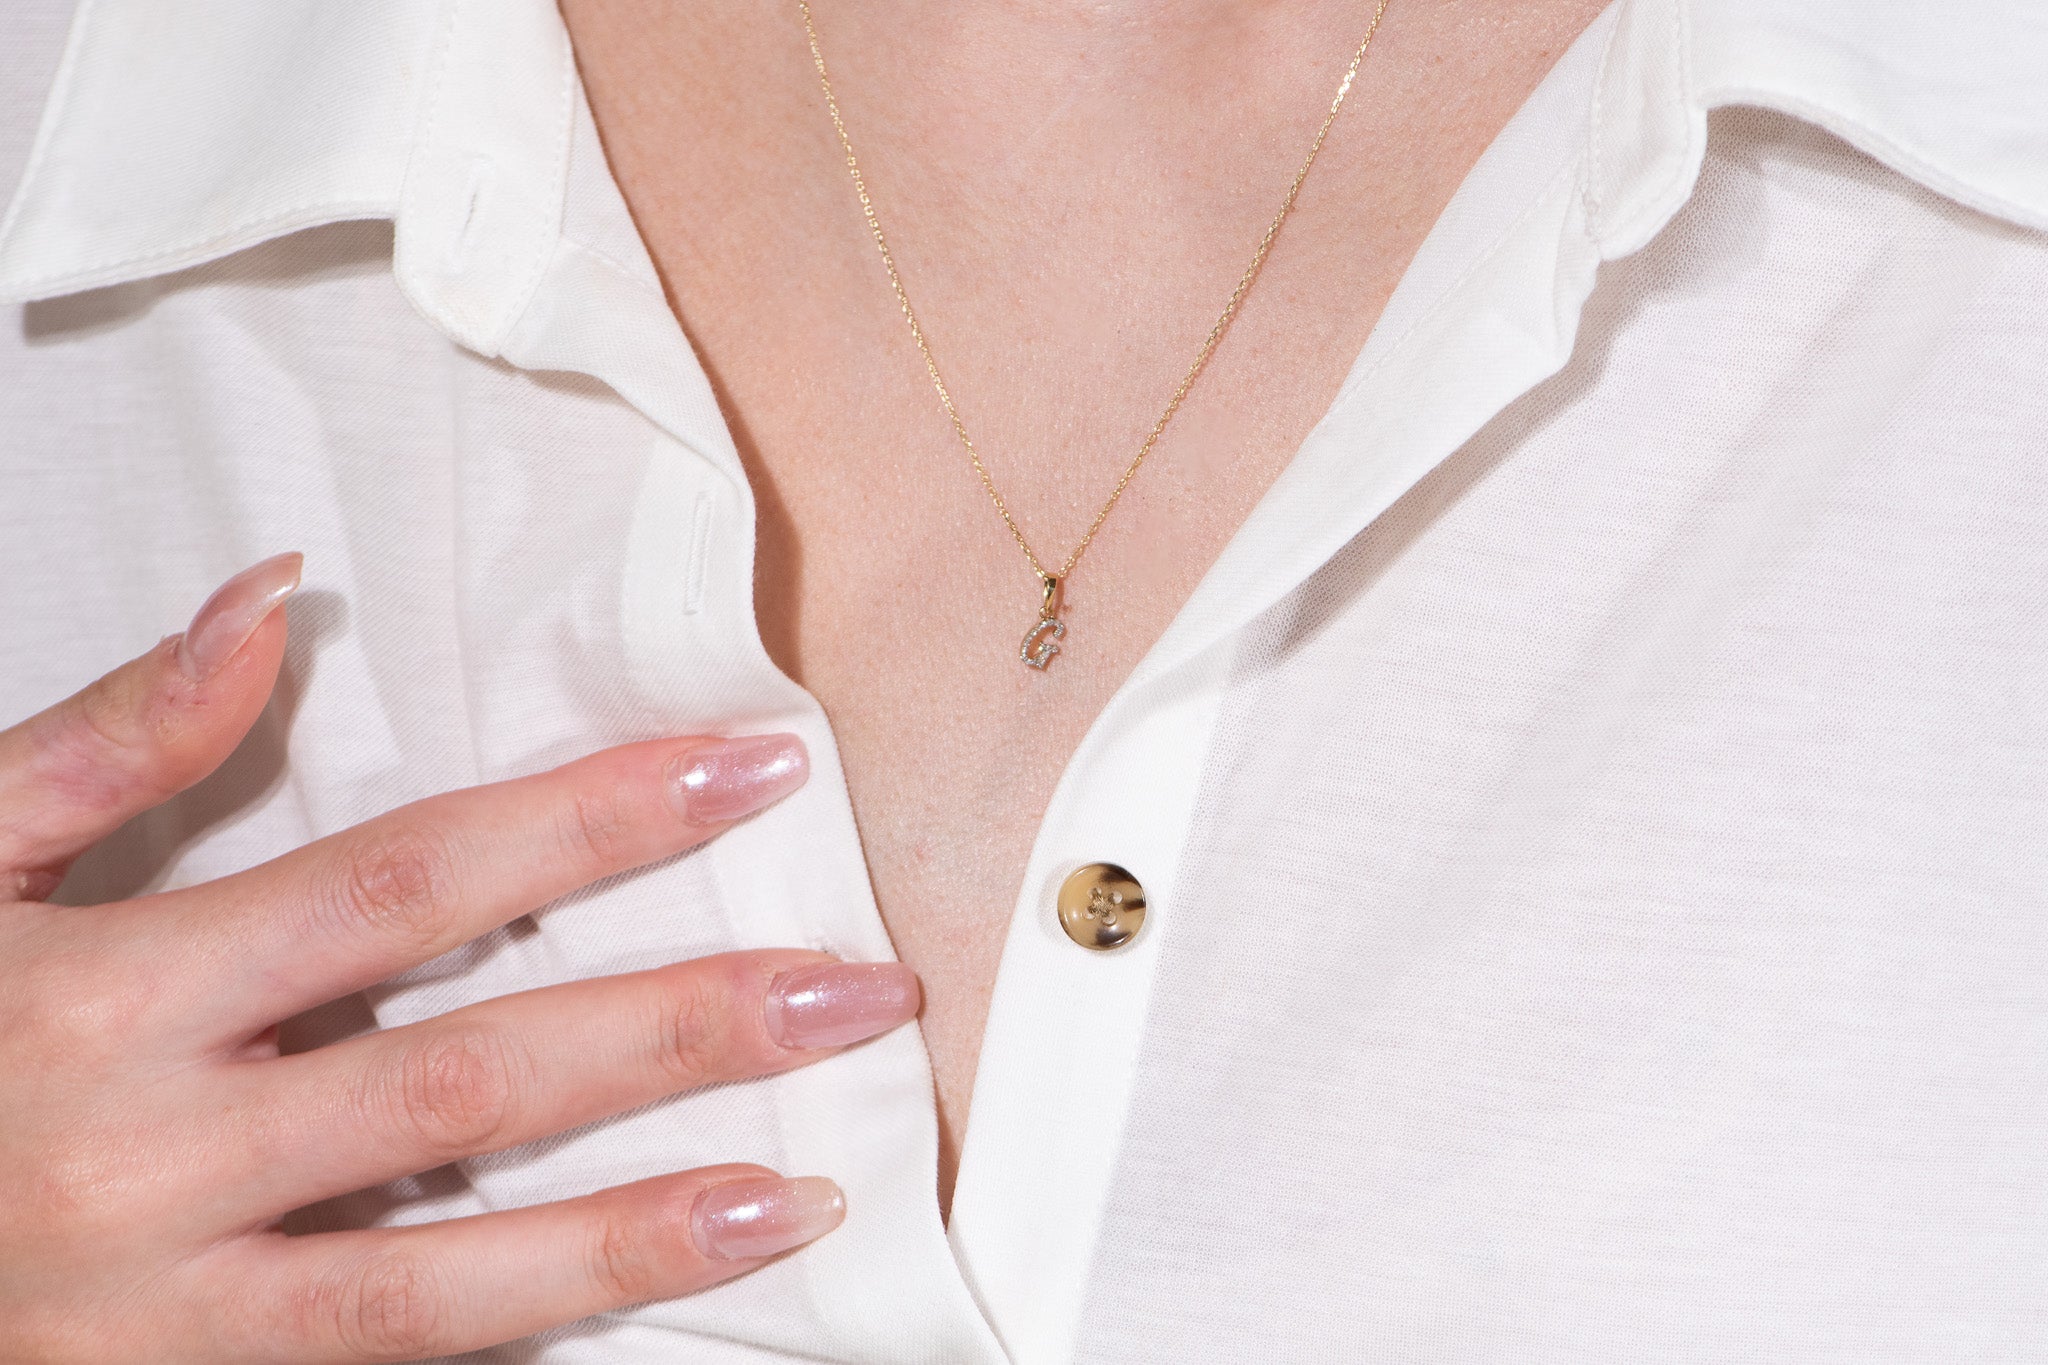 Cursive Diamond Initial Necklace - G Necklaces Estella Collection #product_description# 18557 14k Diamond Gemstone #tag4# #tag5# #tag6# #tag7# #tag8# #tag9# #tag10# 14k Yellow Gold